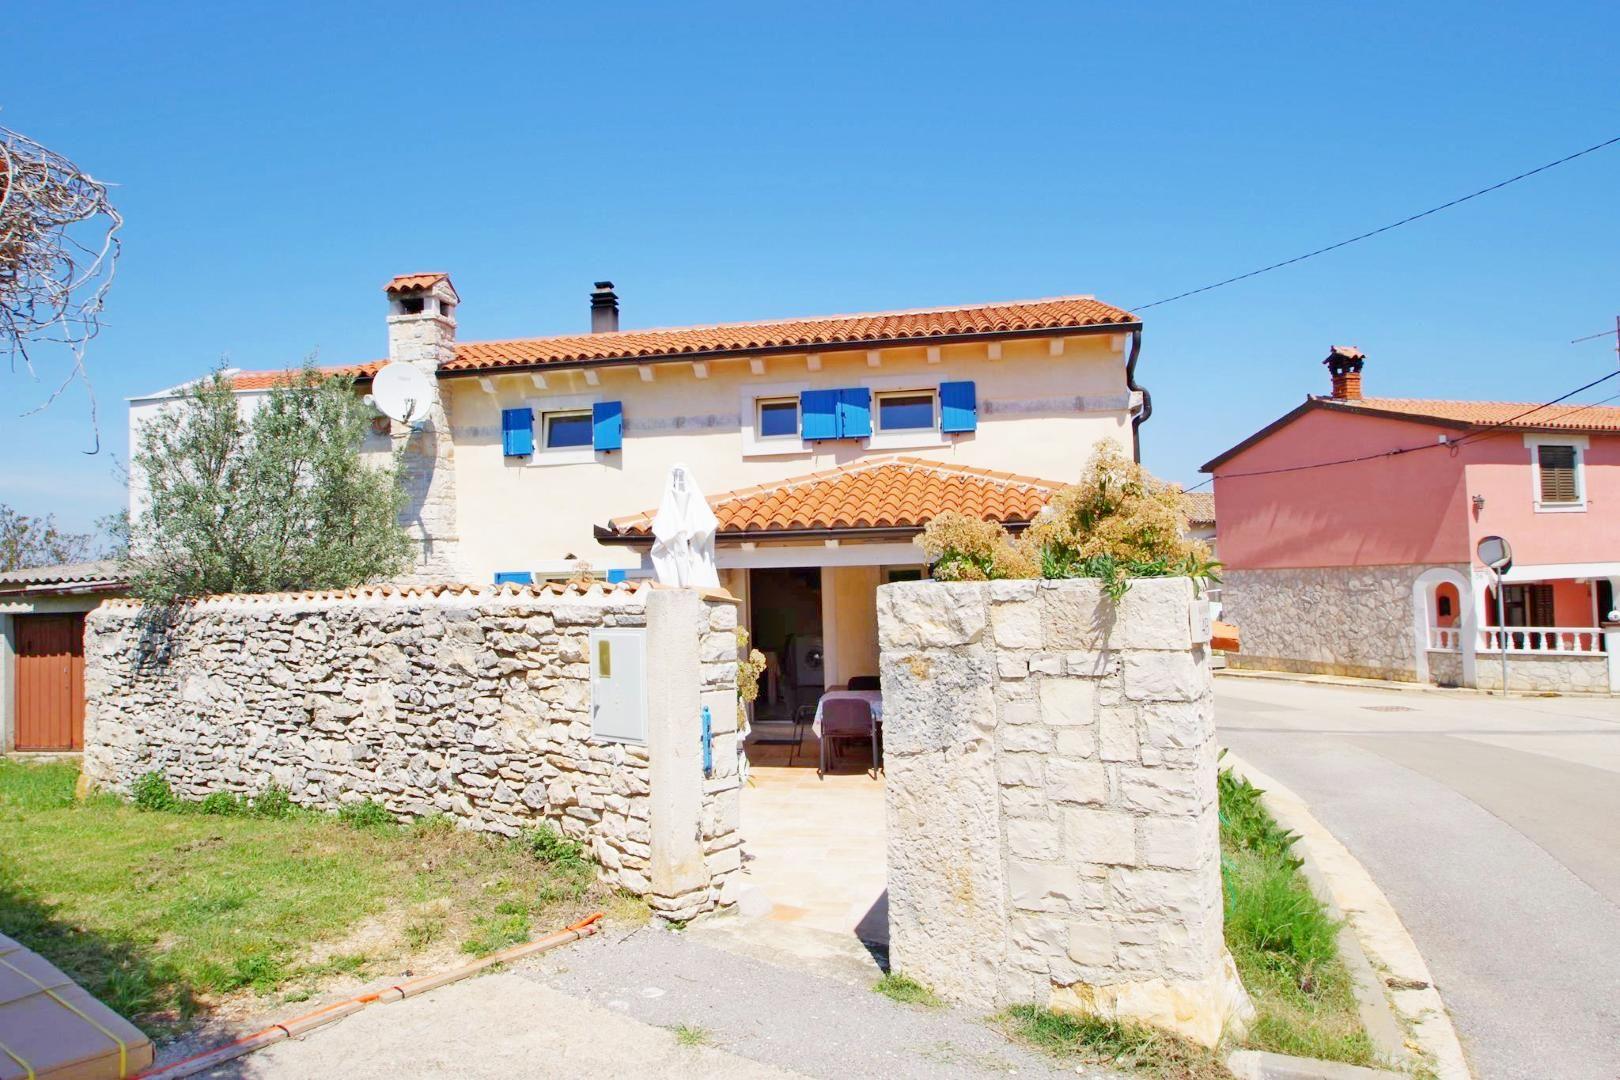 Ferienhaus in Kavran mit Terrasse, Garten und Gril Ferienhaus in Kroatien